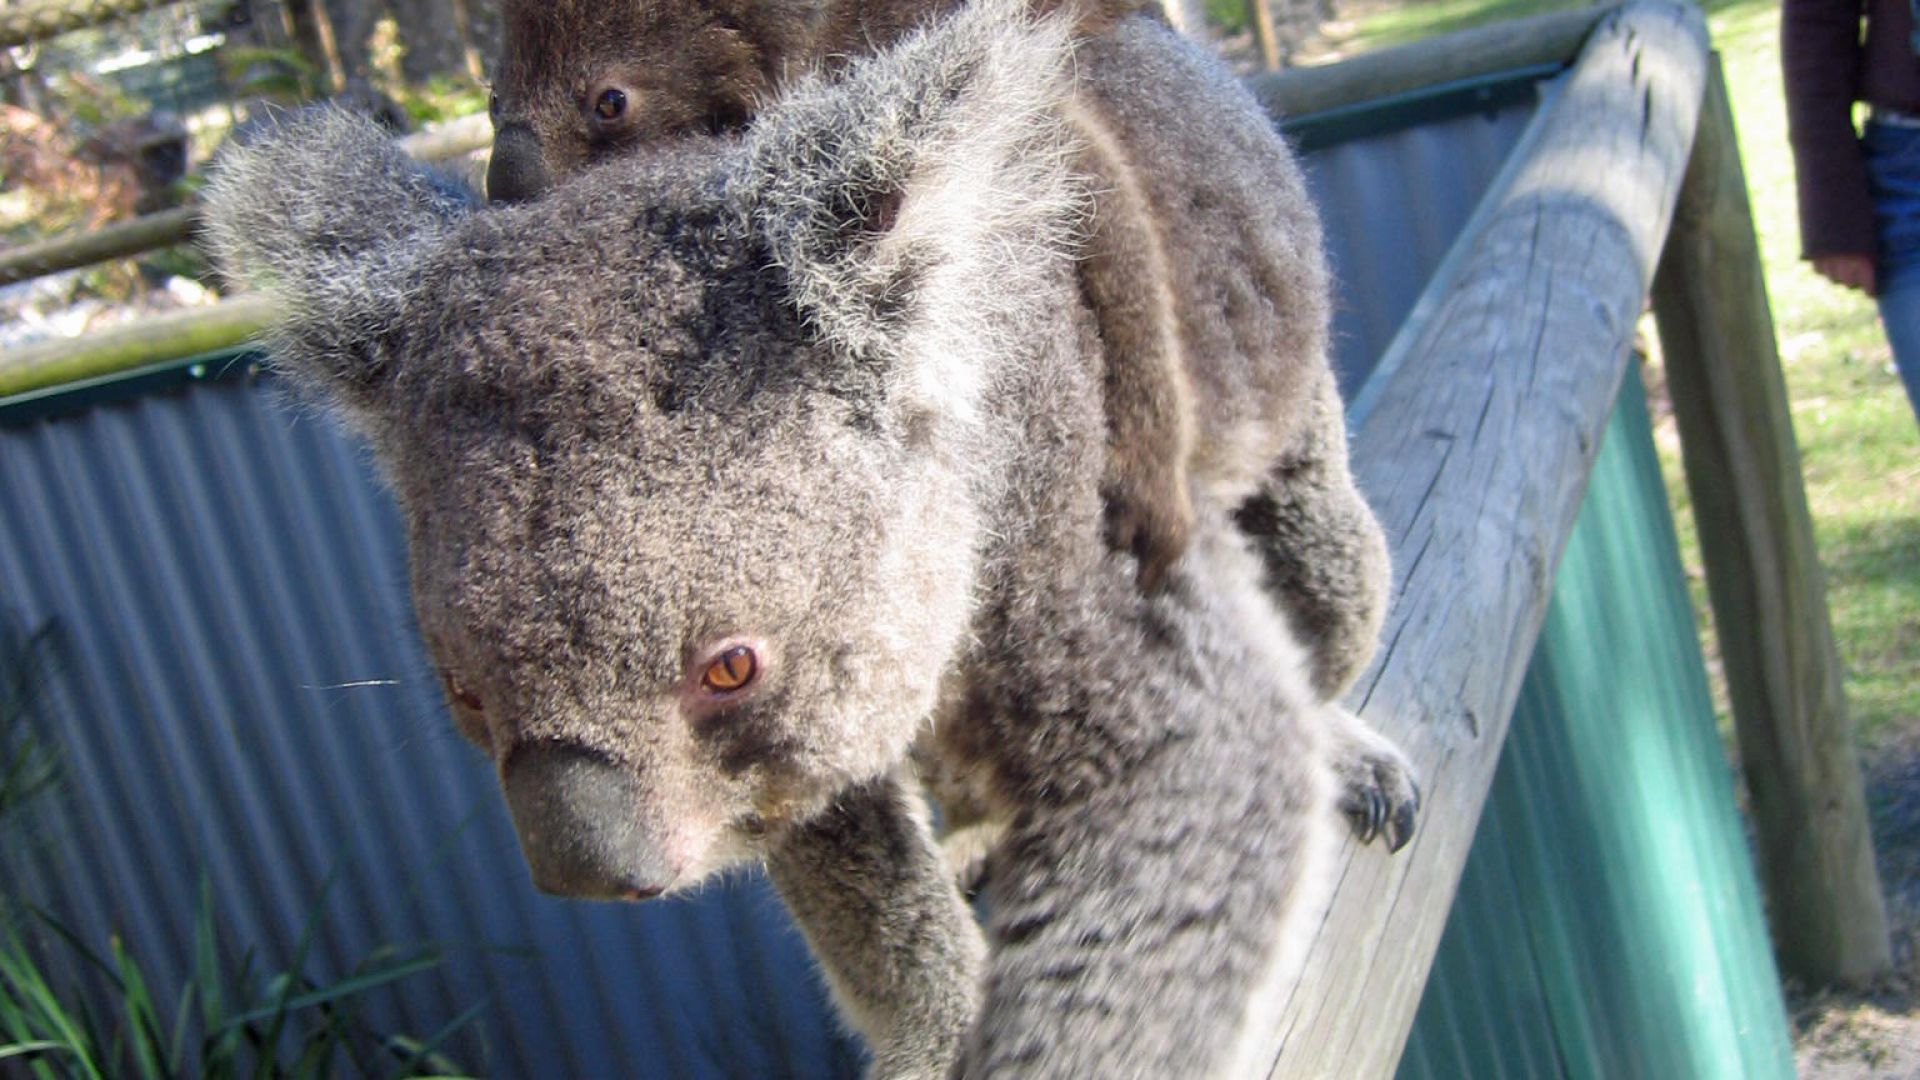 Comment S Appelle La Femelle Du Koala Koala : taille, description, biotope, habitat, reproduction